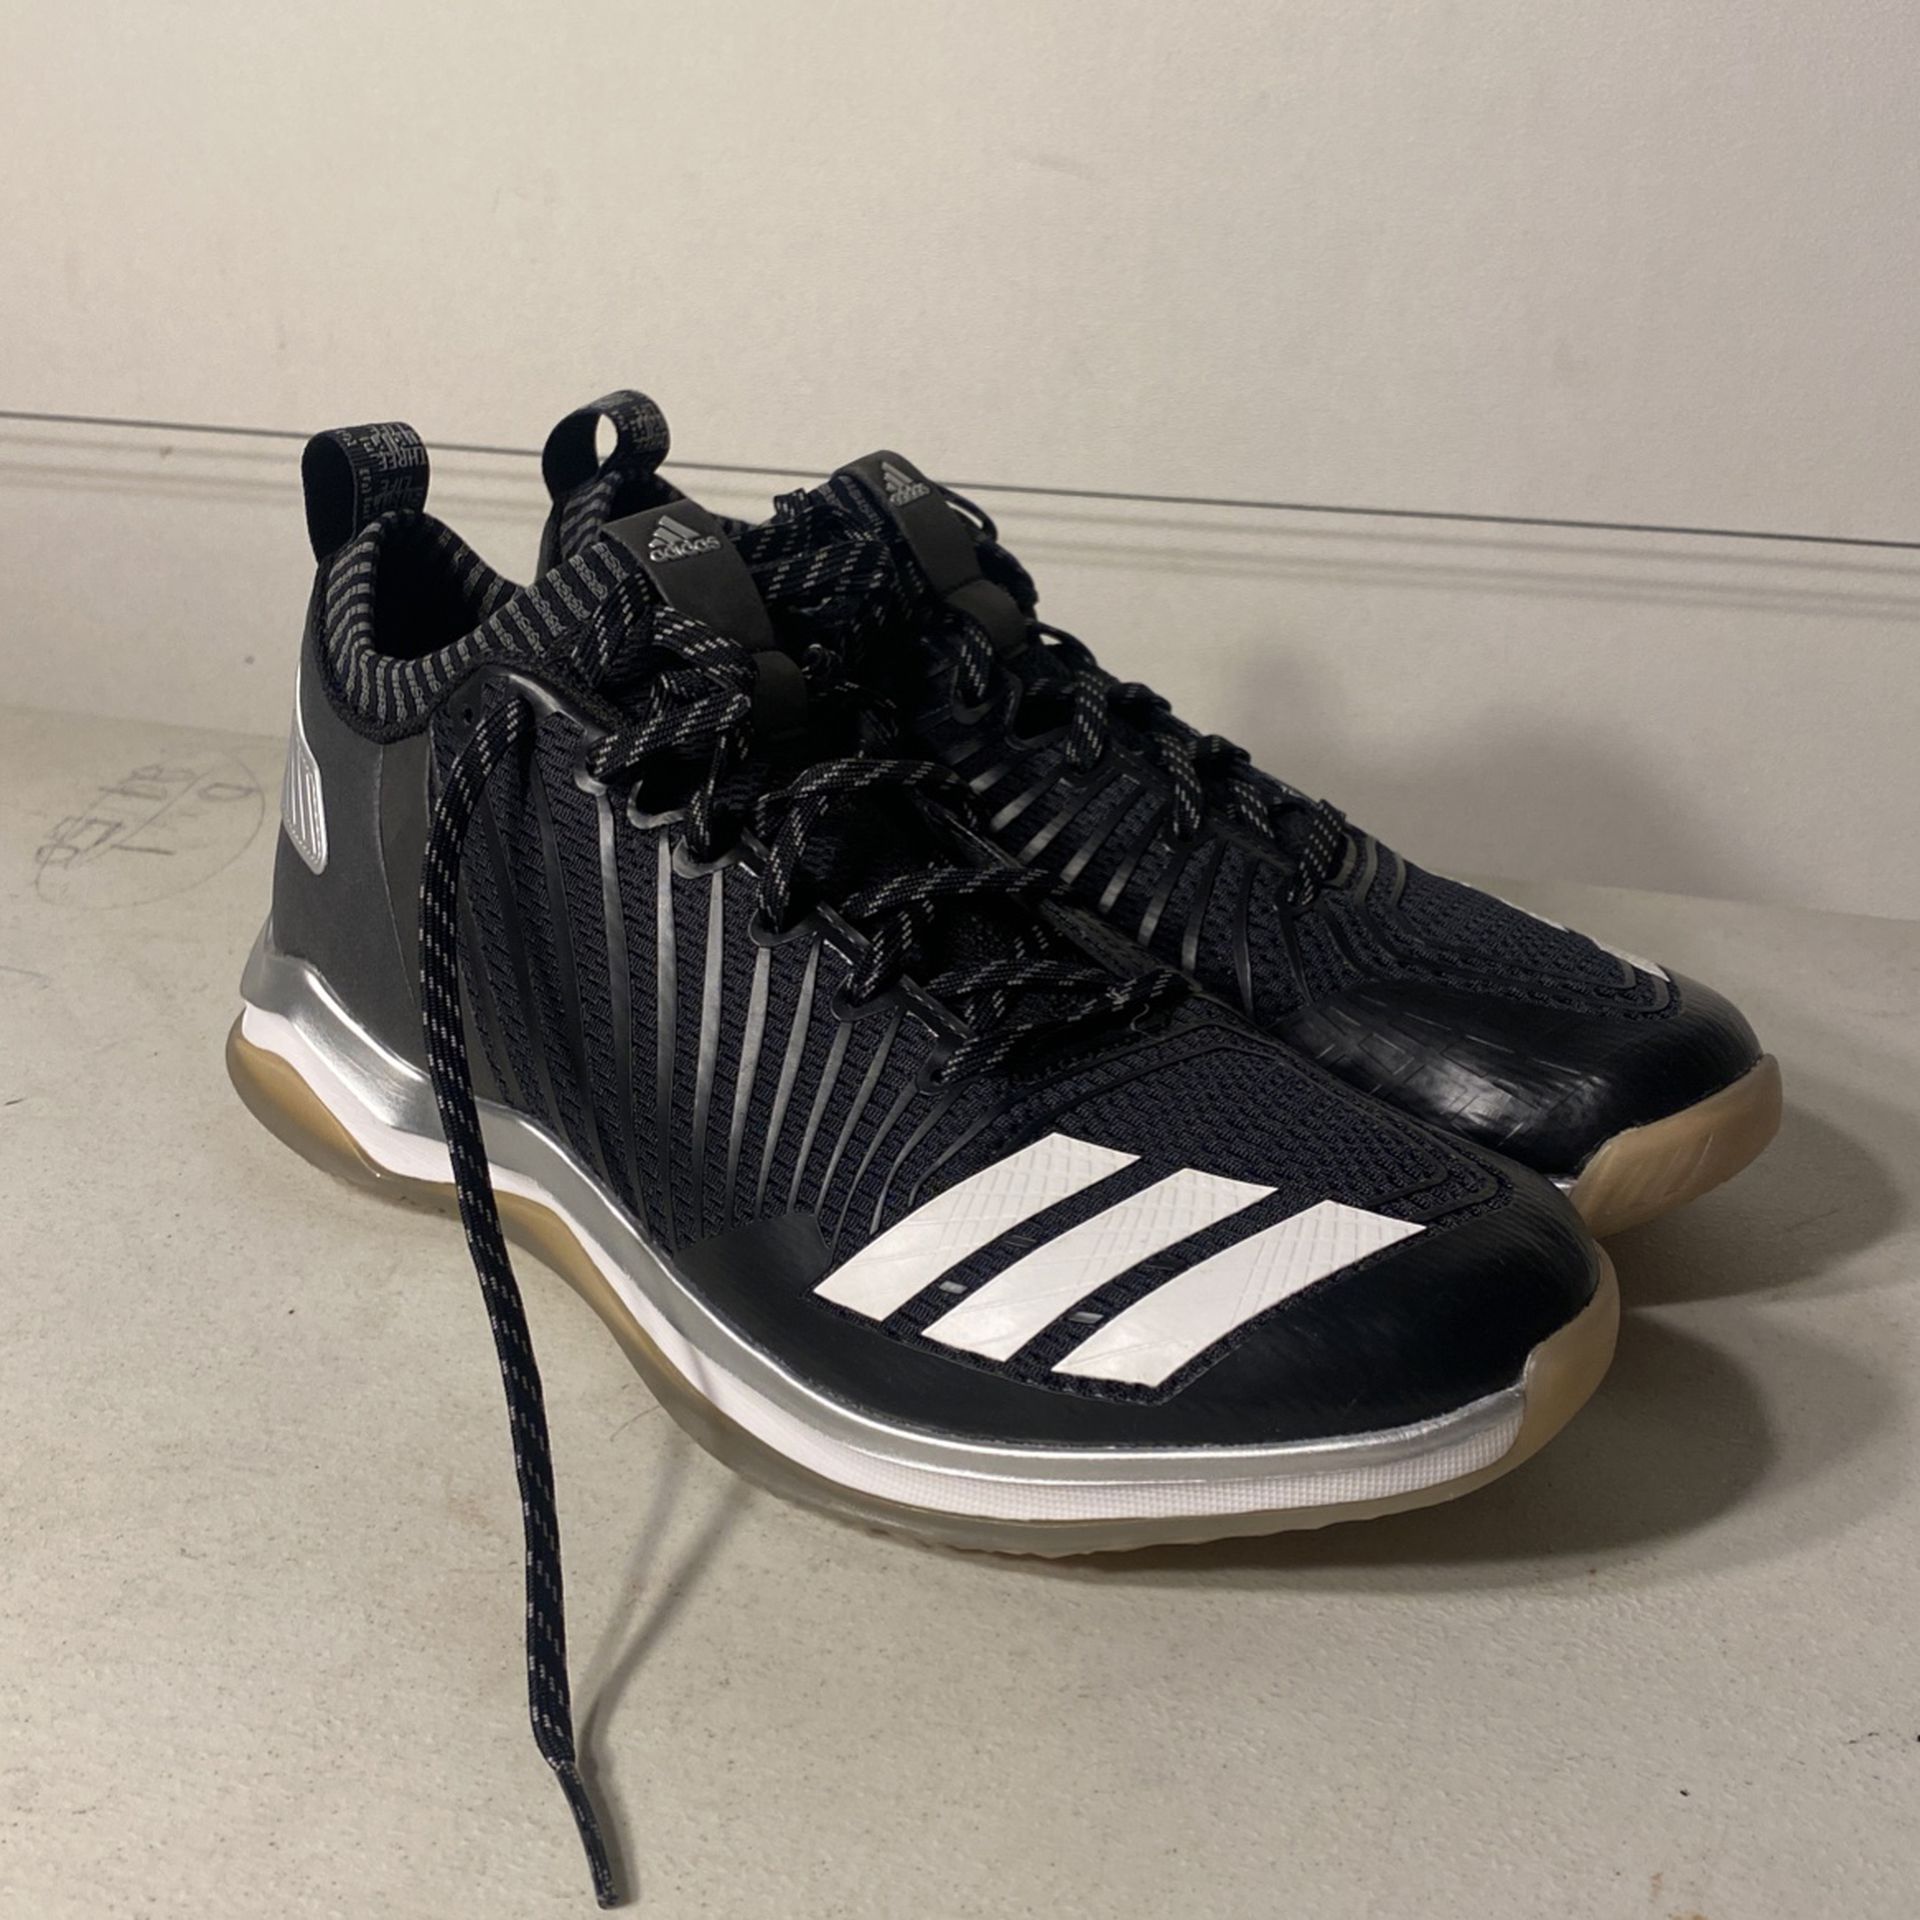 Adidas training shoes (size 11)